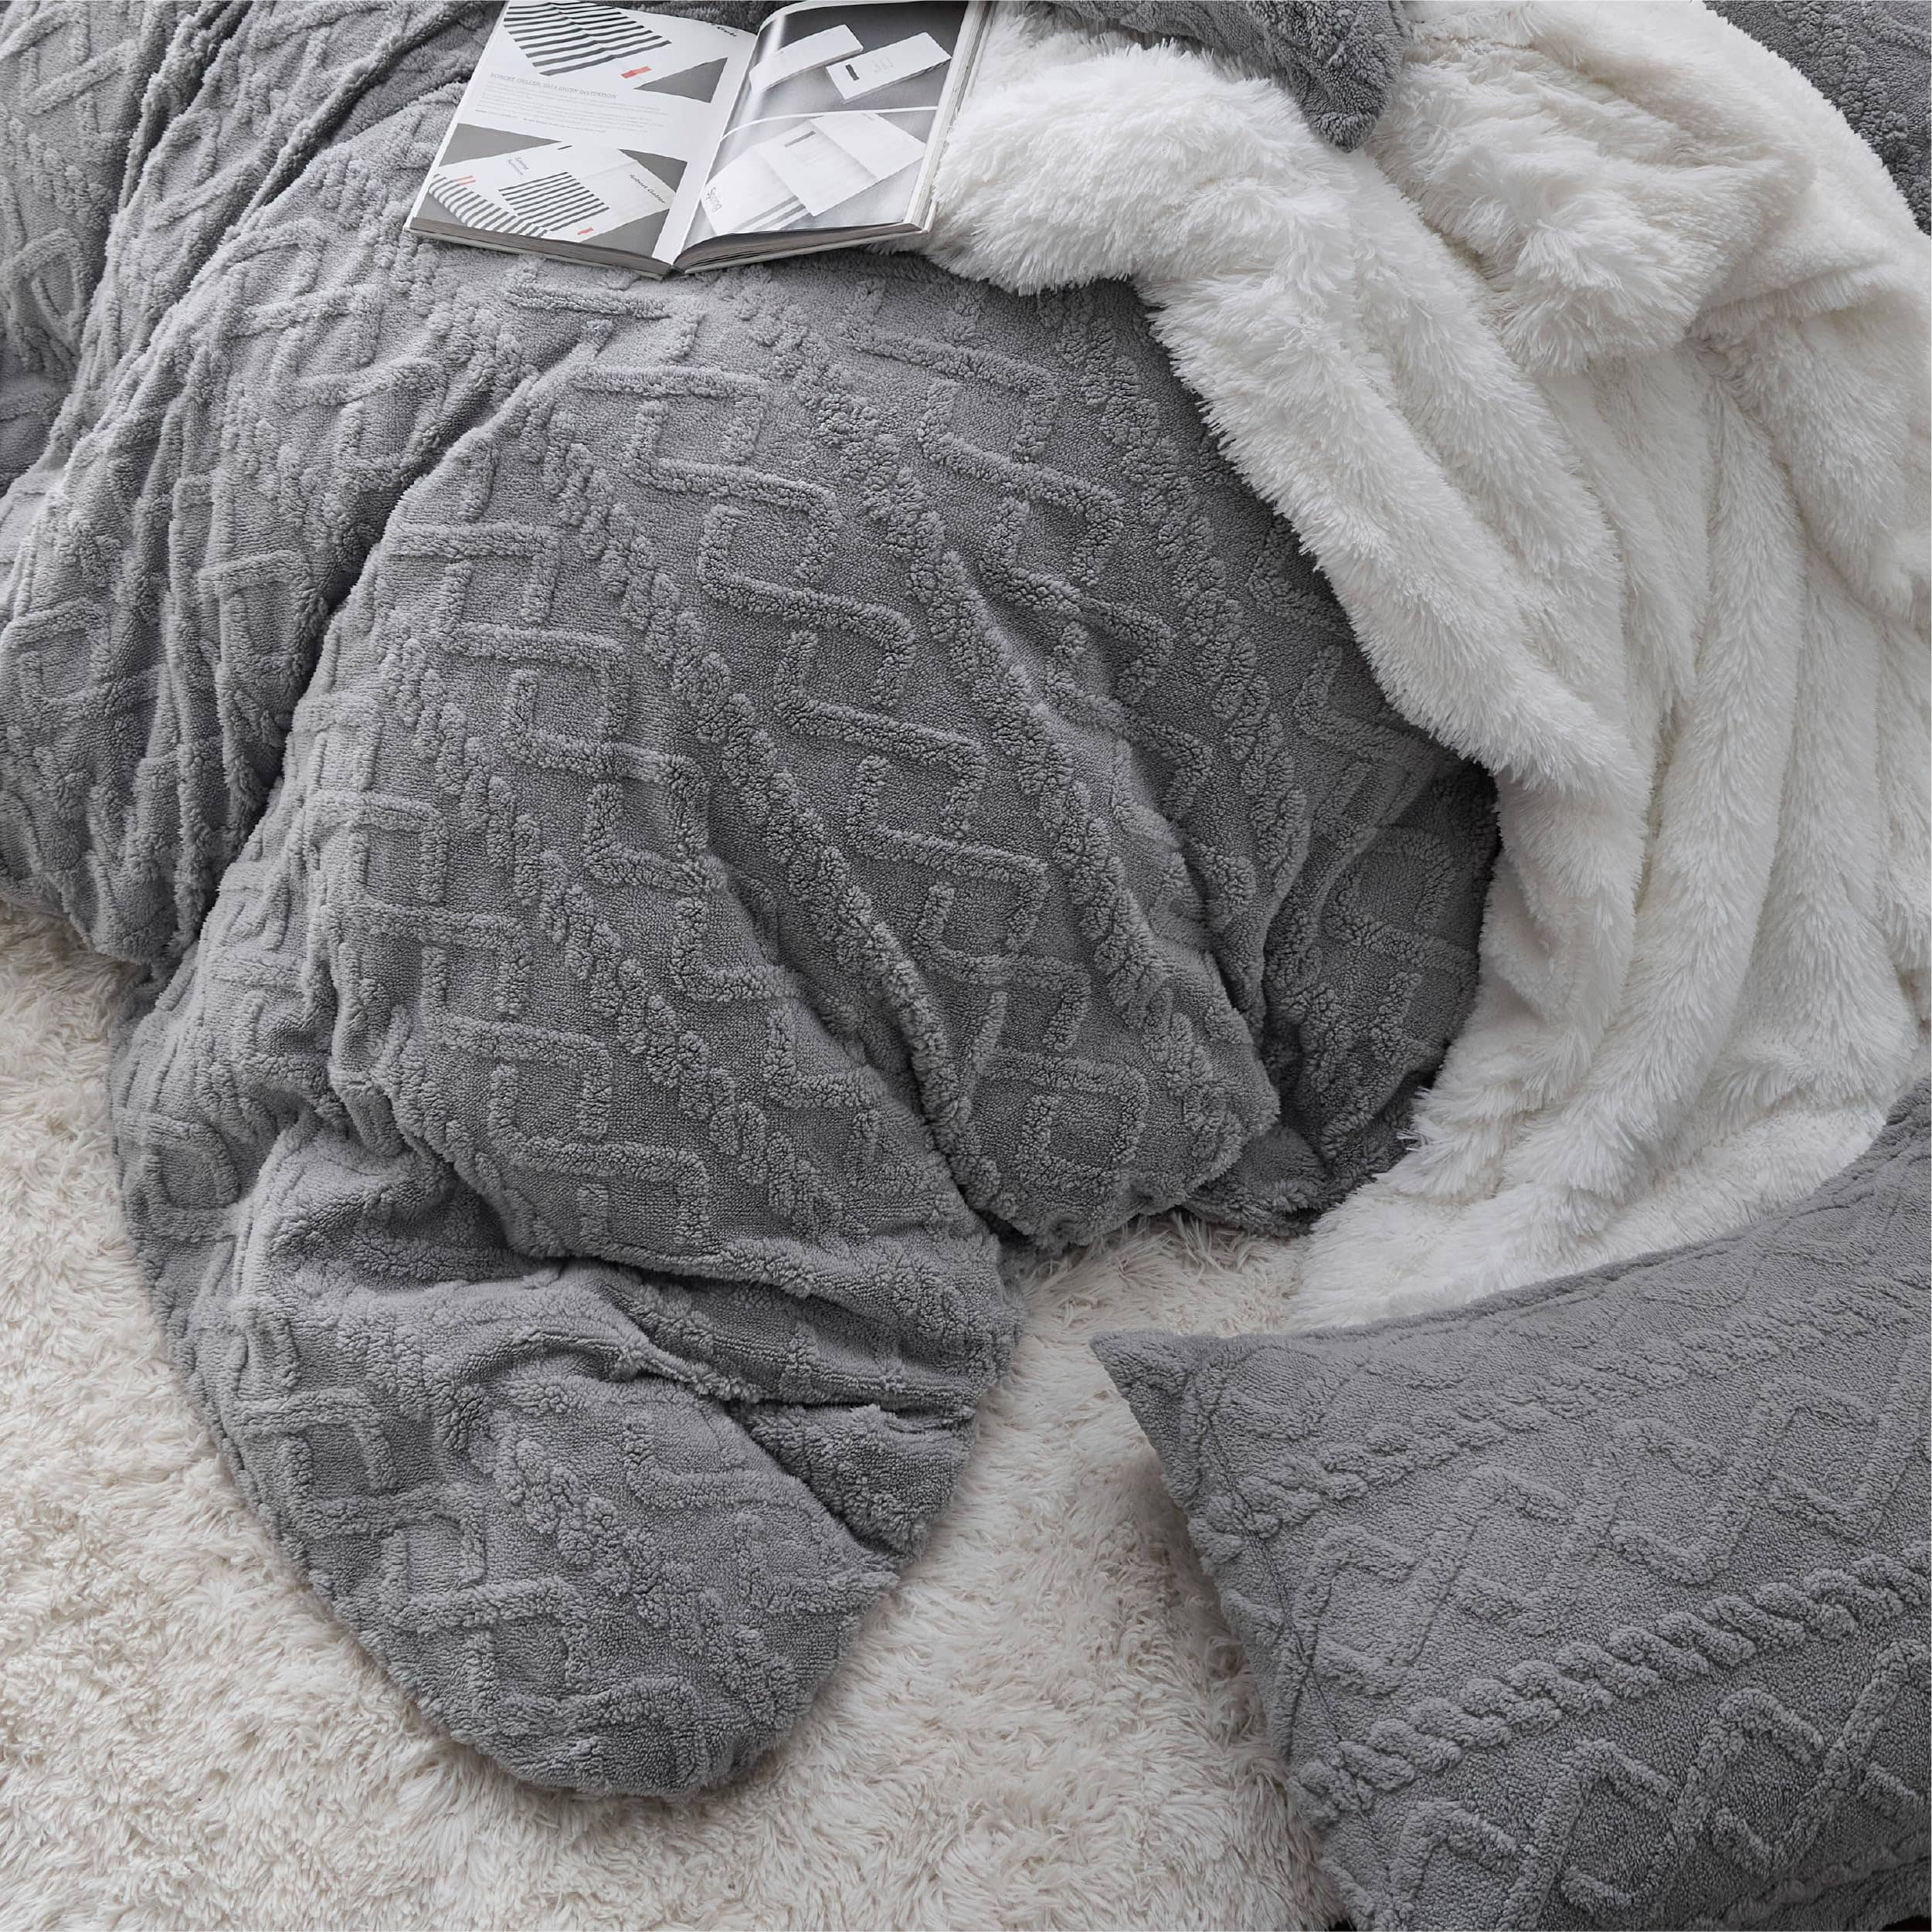 Bedsure Fluffy Boho Duvet Cover Set